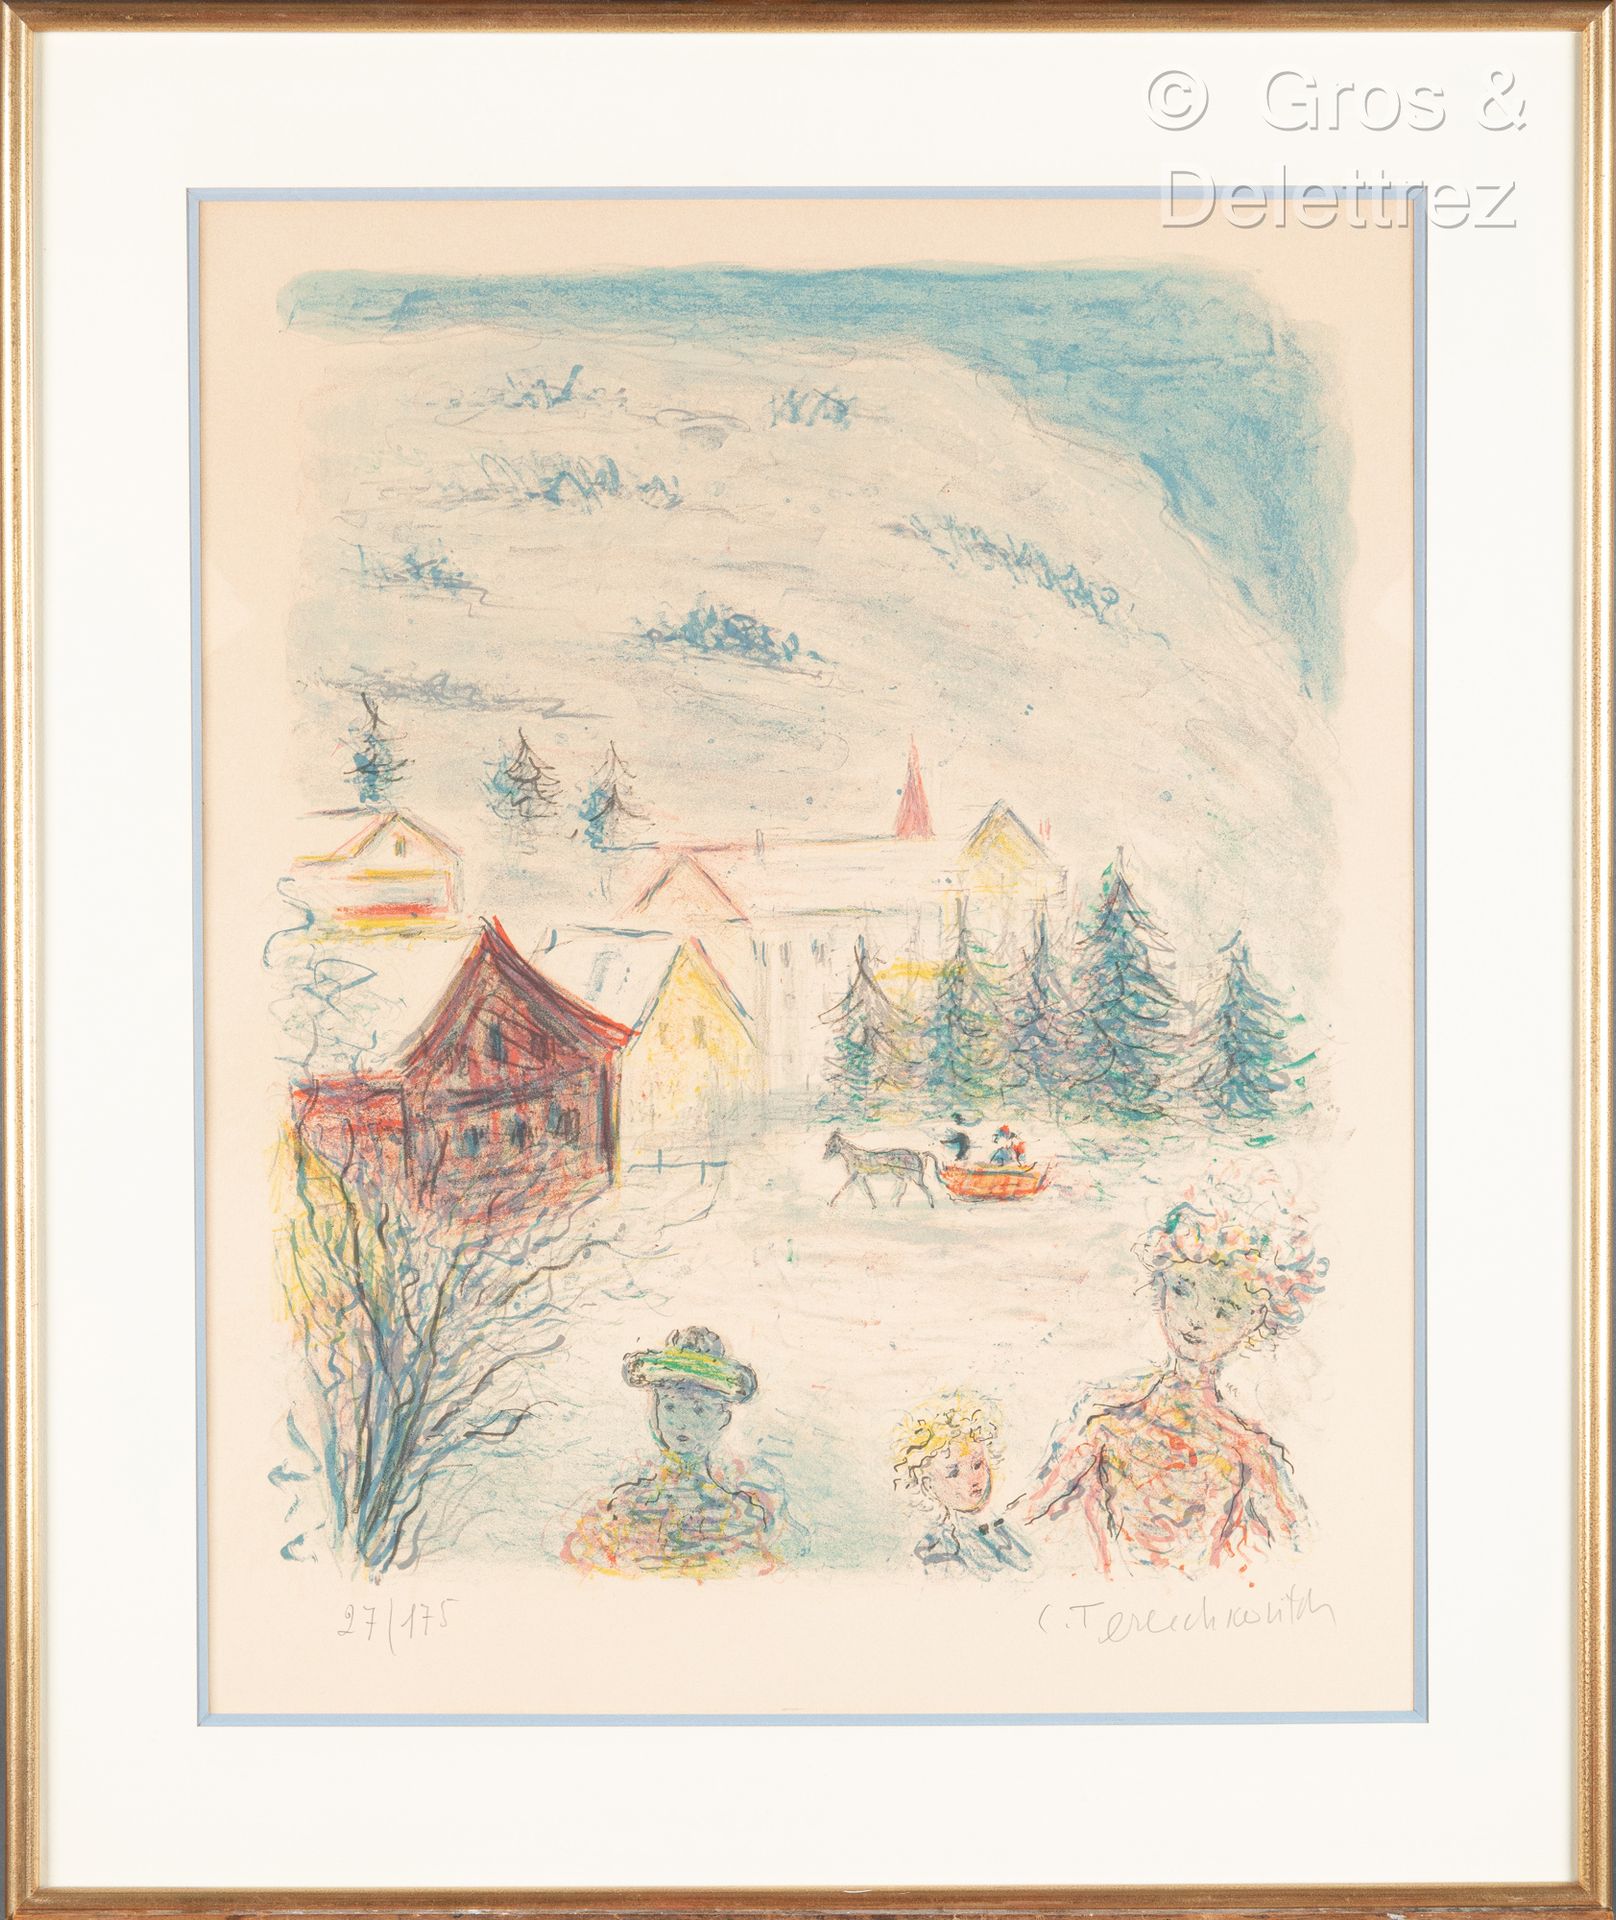 Null 康斯坦丁-安德烈维奇-捷列科维奇(1902-1978)
动画的雪景
石版画，右下角有签名，编号为27/175
62 x 48 cm 正在观看